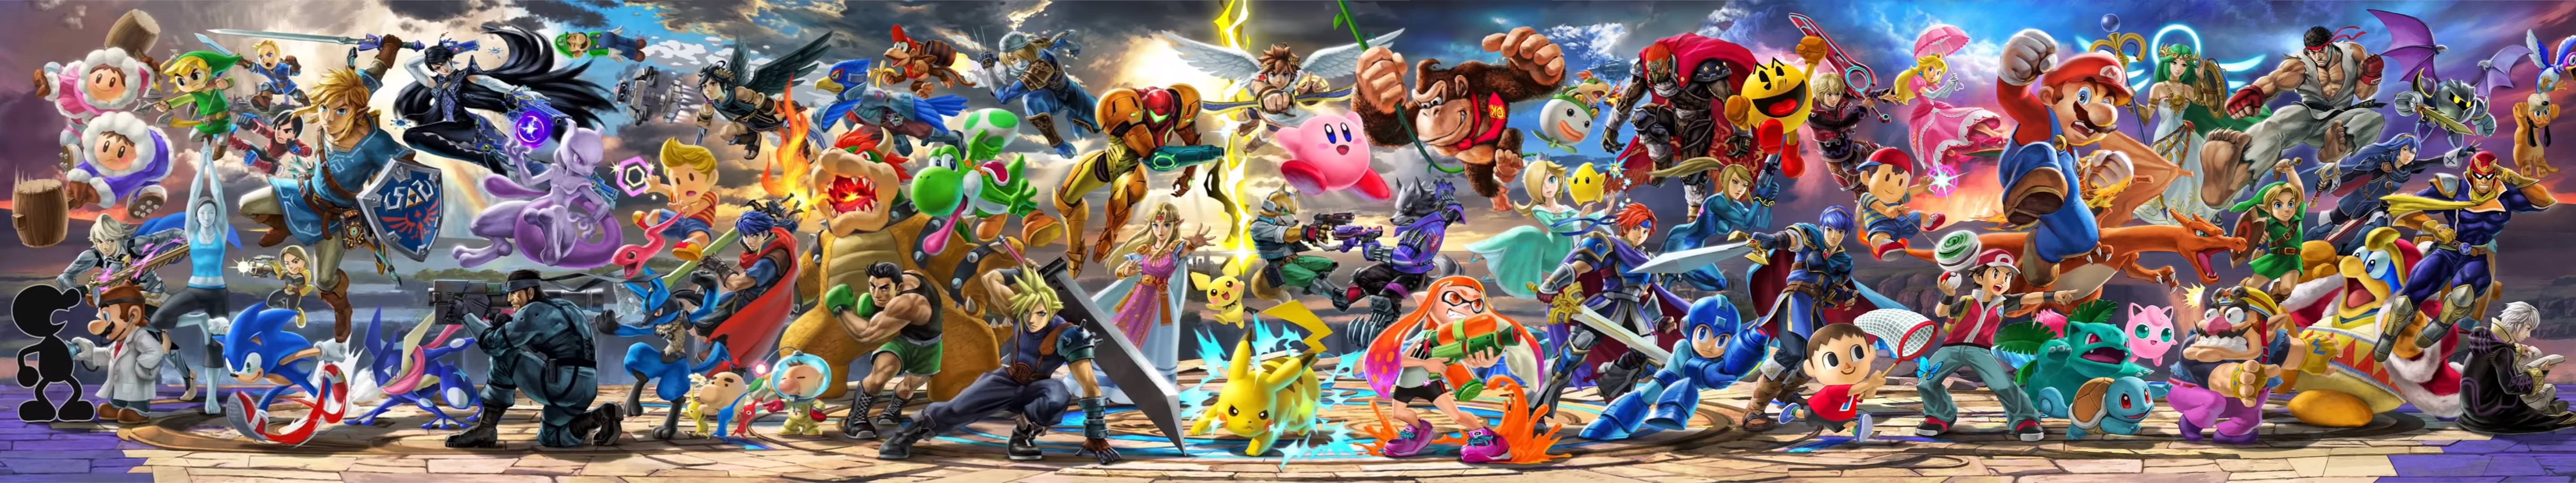 Super Smash Bros Ultimate Screen Wallpaper